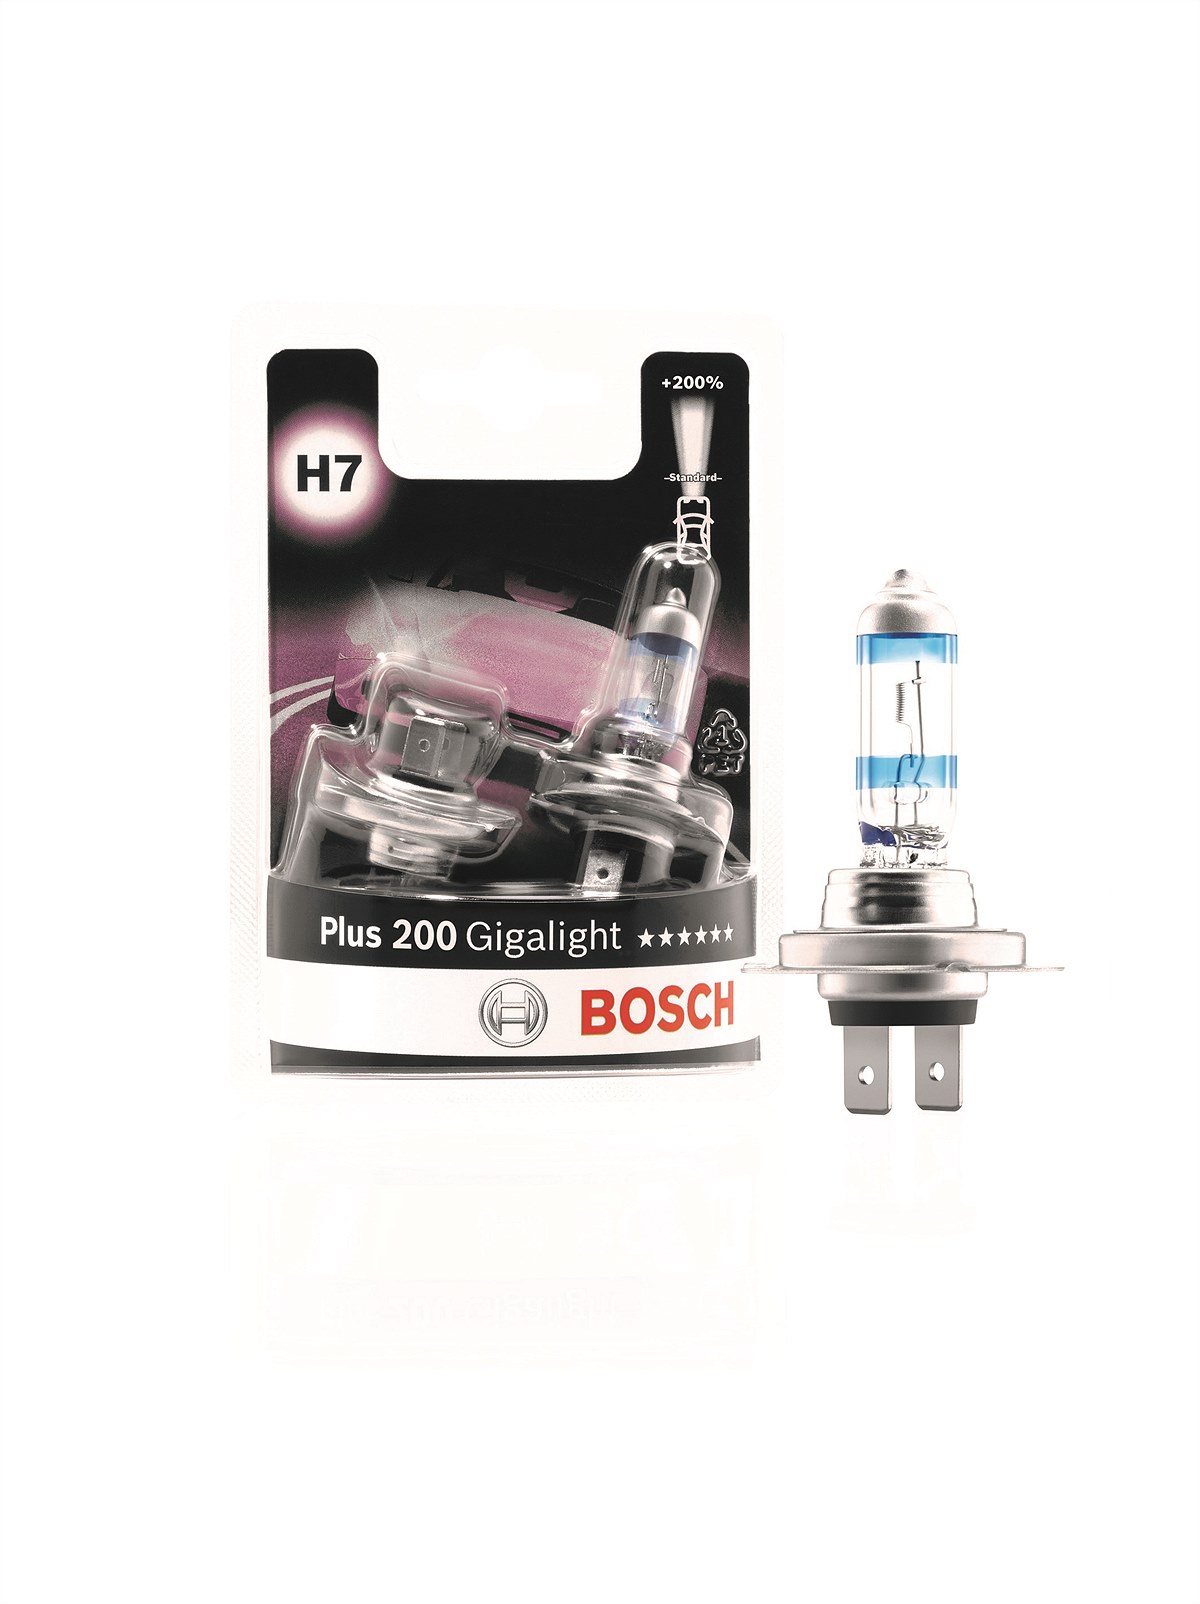 Die Halogen-Scheinwerferlampe Plus 200 Gigalight von Bosch erhöht die Lichtleistung jetzt nochmals deutlich.